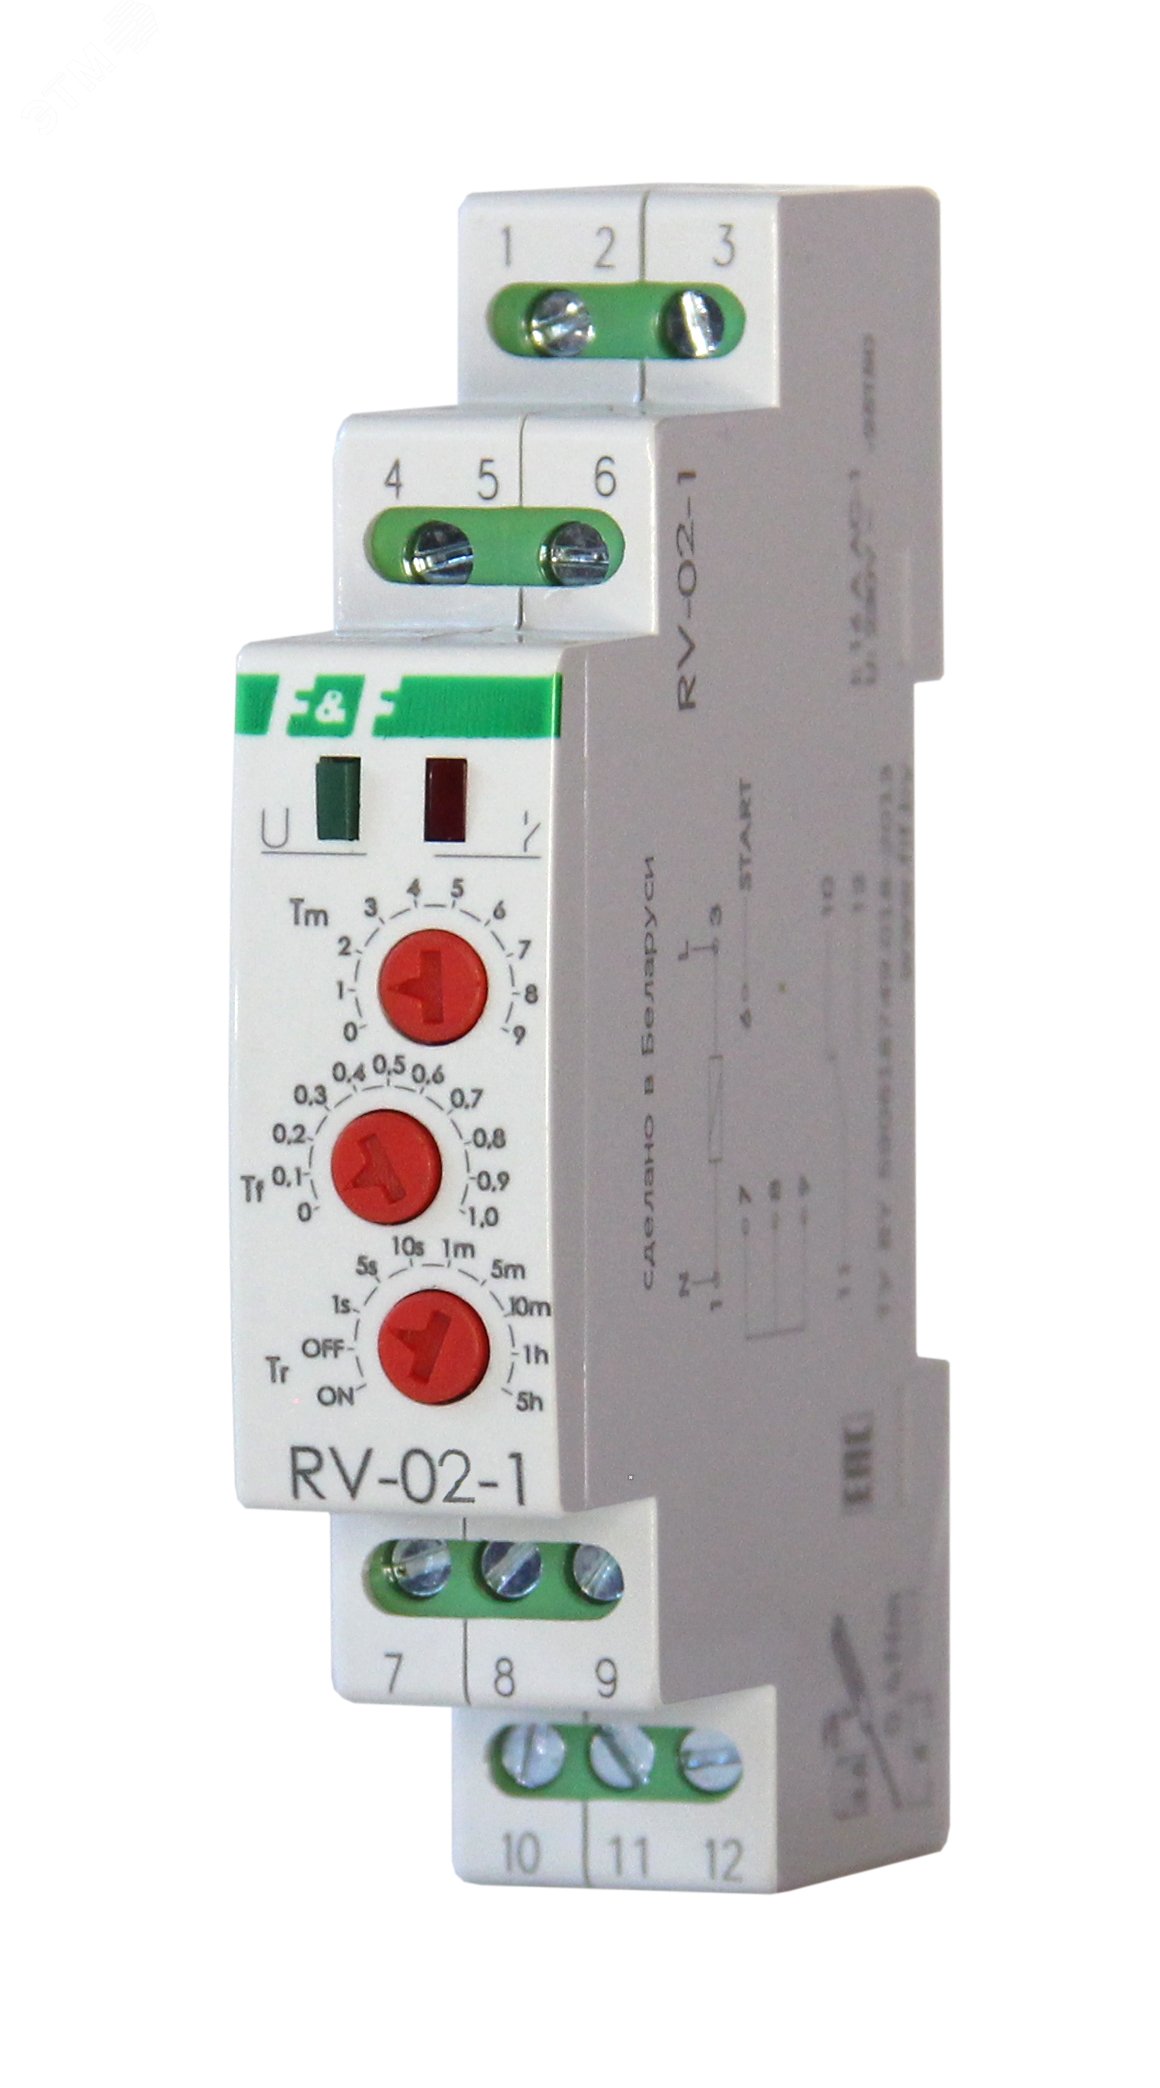 F f автоматика. Реле контроля фаз f & f CKF-318-1. Реле тока f&f EPP-619-1, EA03.004.005. Реле контроля фаз CZF-B (3х400/230+n 8а 1перекл. Ip20 монтаж на din-рейке) 294926. Реле контроля наличия и чередования фаз CKF-318-1.